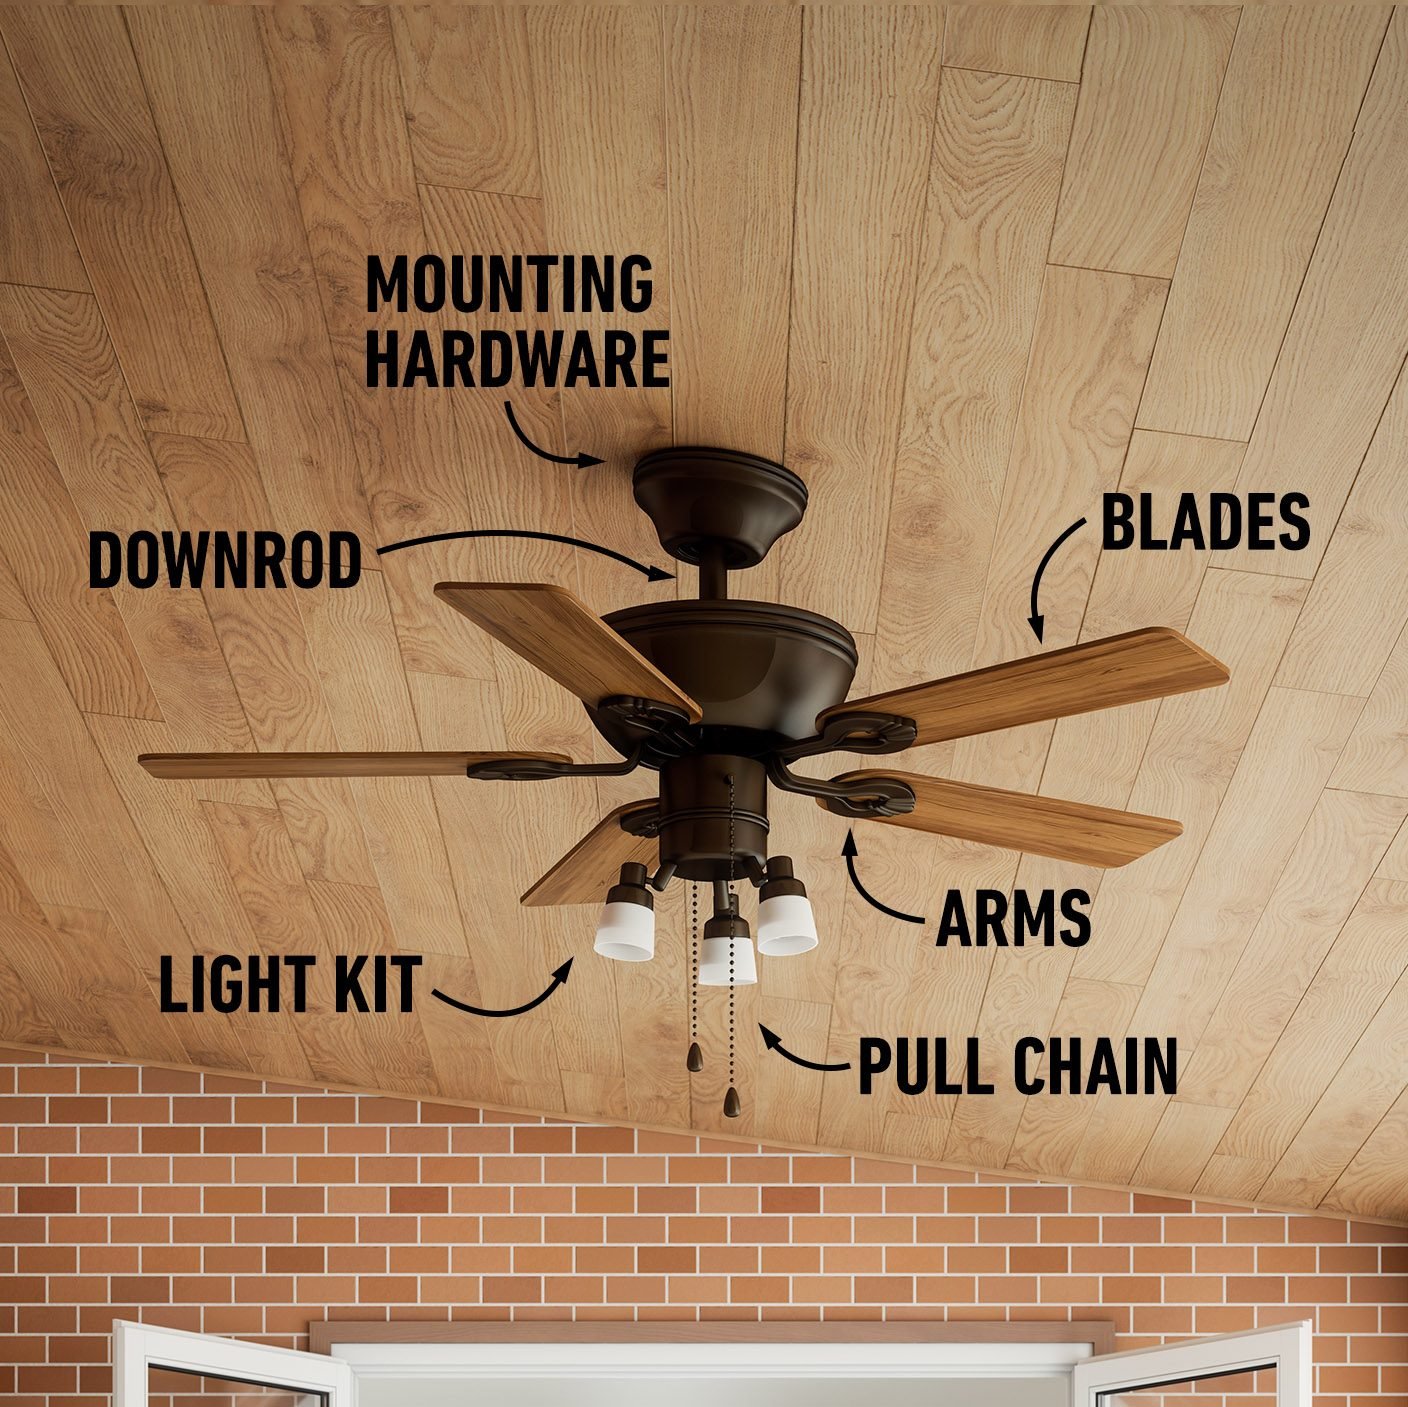 A ceiling fan parts